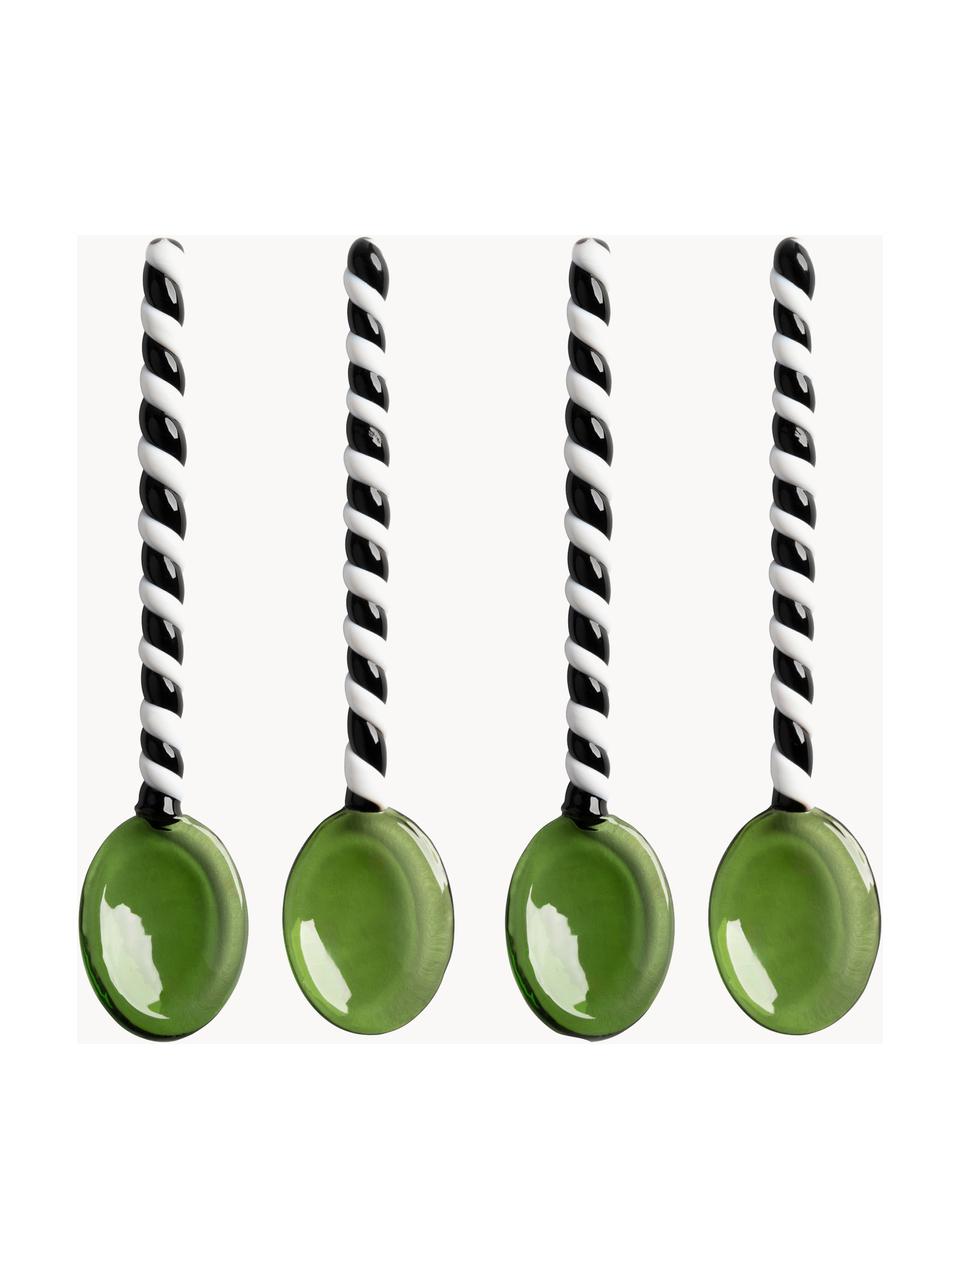 Cuillères en verre borosilicate Duet, 4 pièces, Verre borosilicate, Vert, noir, blanc, long. 13 cm